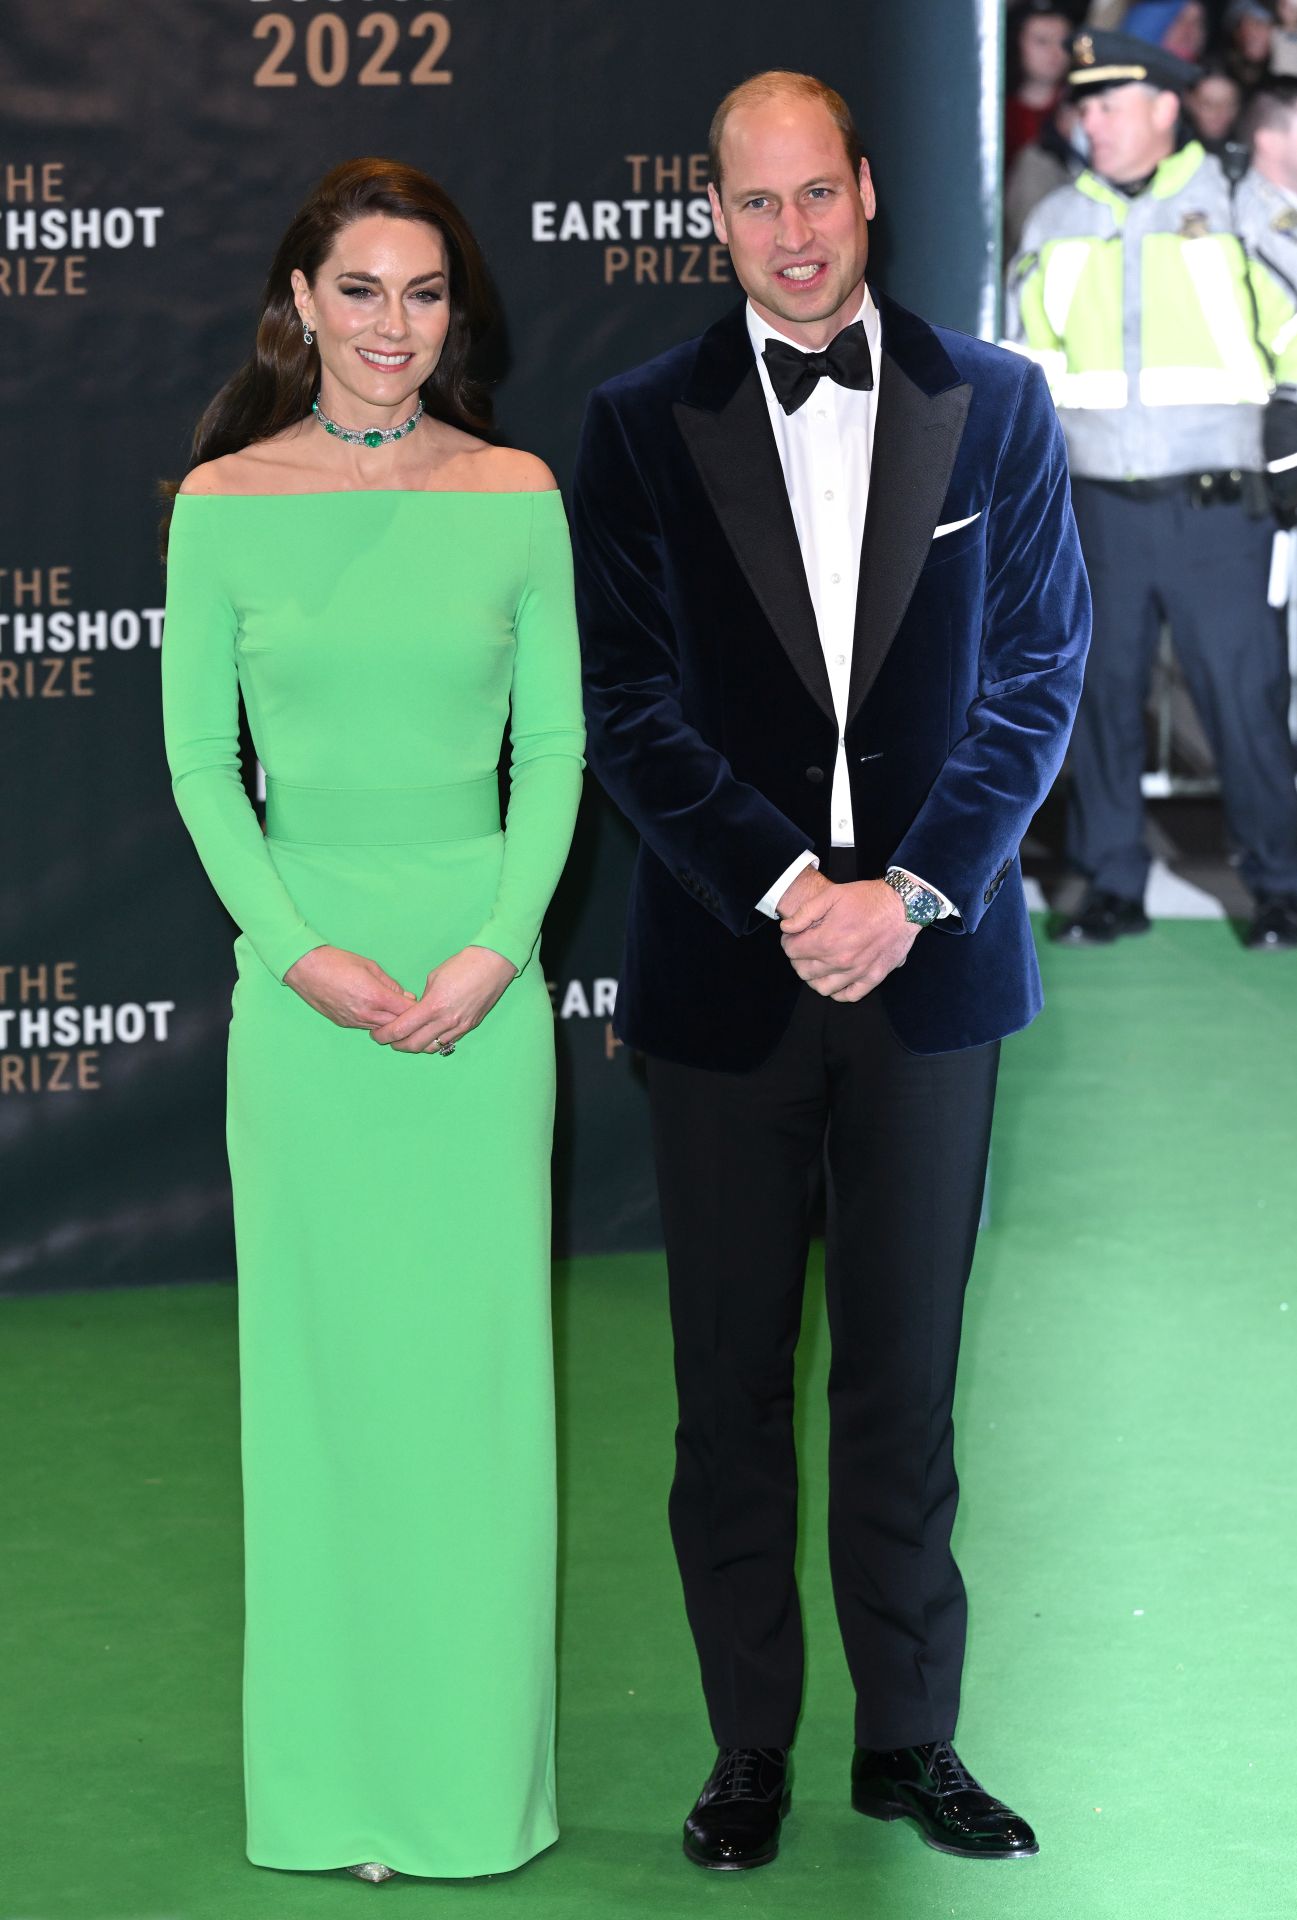 Katalin hercegné és Vilmos herceg a The Earthshot Prize 2022 eseményen.